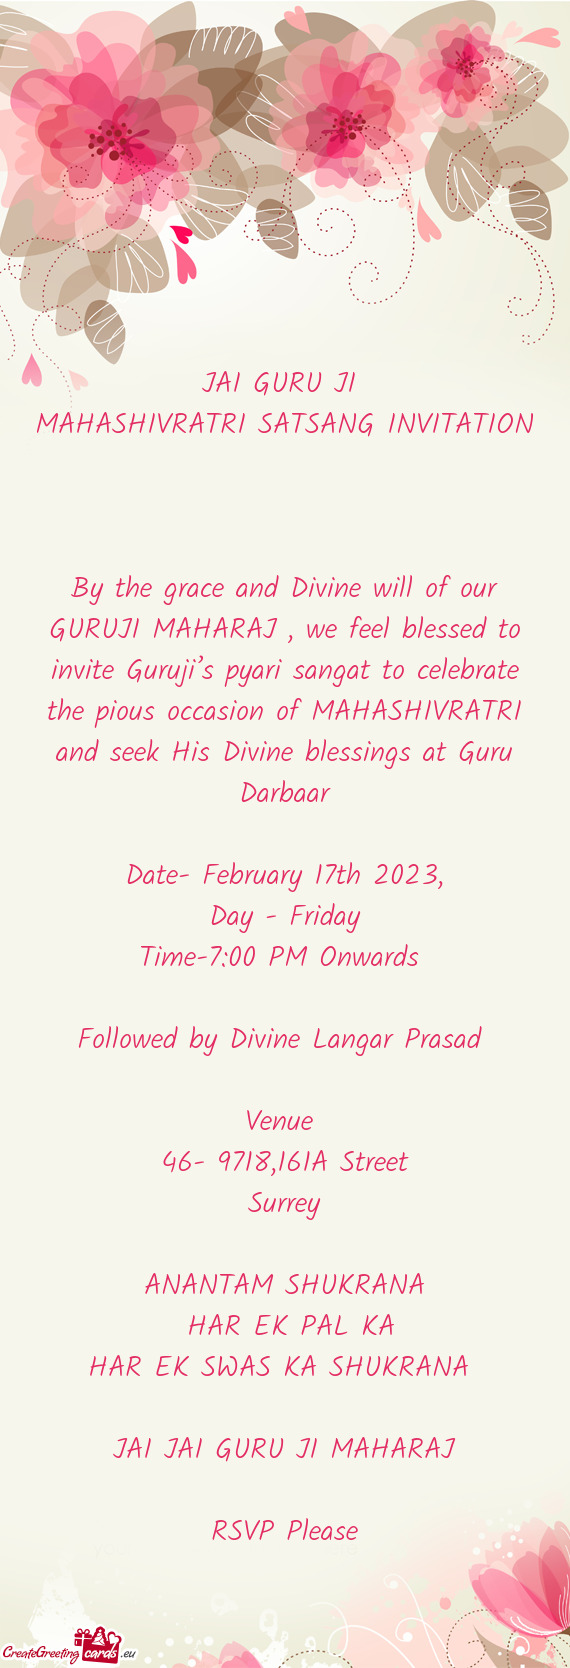 At to celebrate the pious occasion of MAHASHIVRATRI and seek His Divine blessings at Guru Darbaar